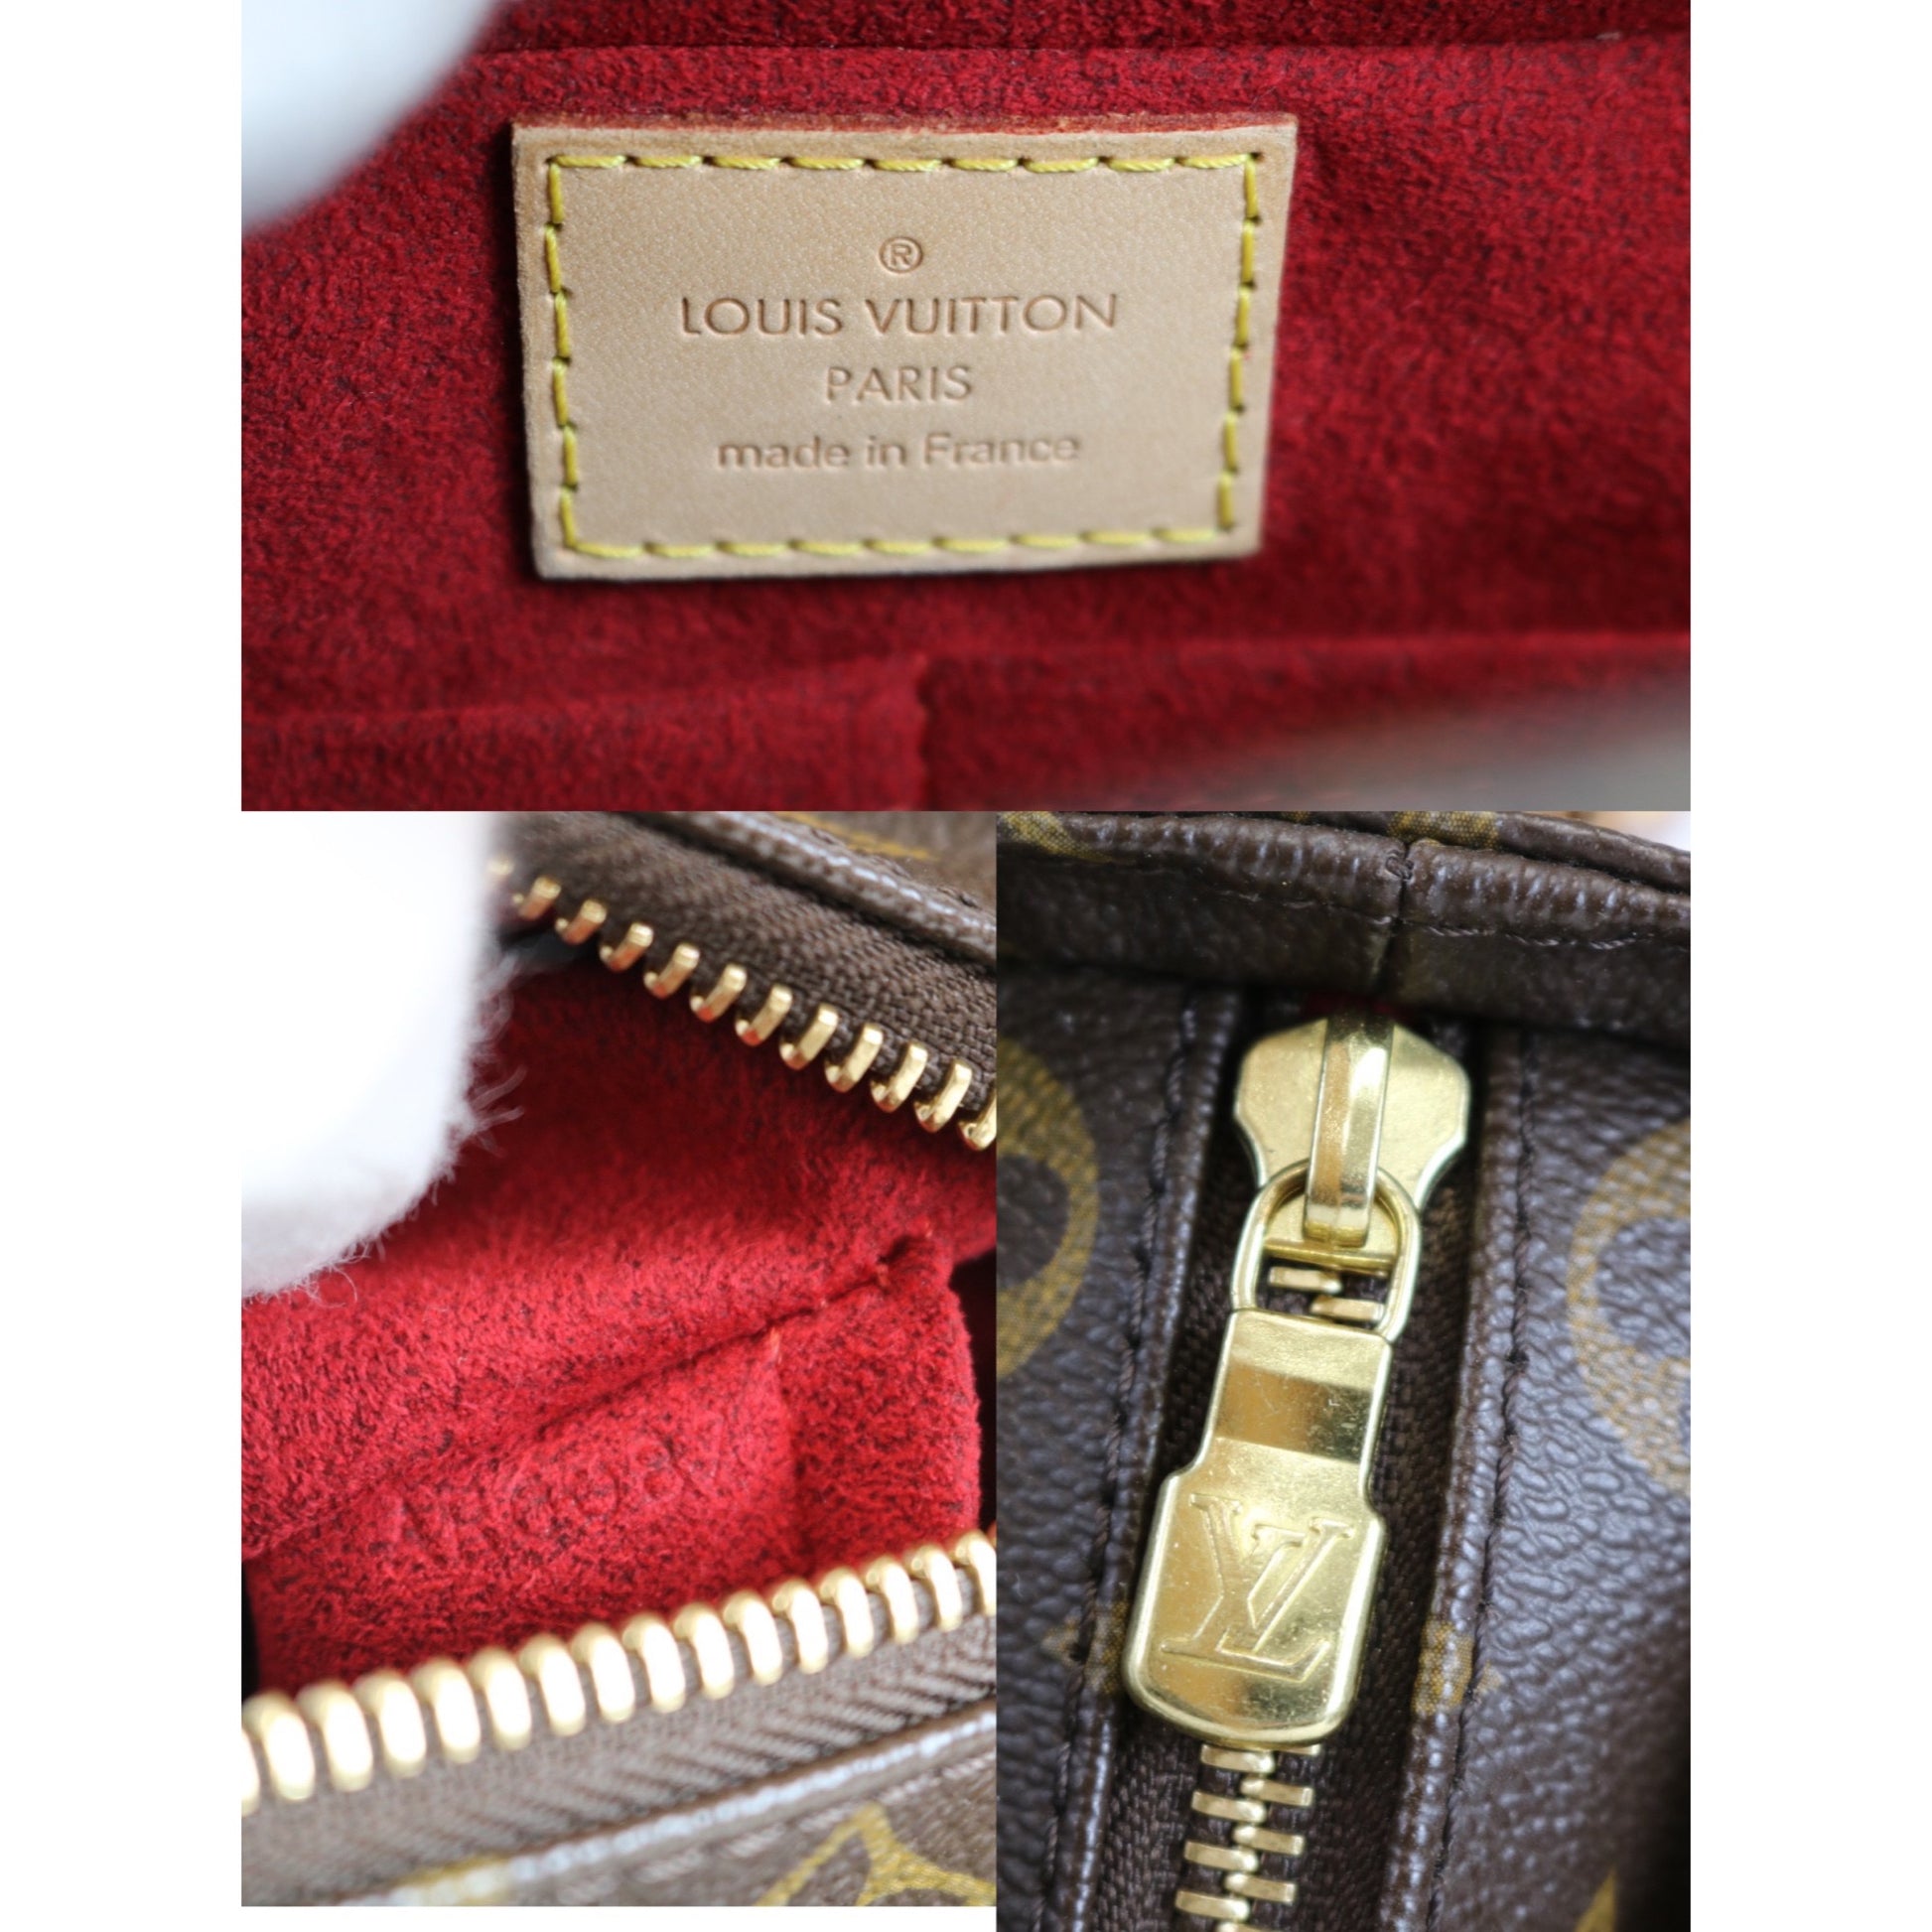 At Auction: Louis Vuitton, LOUIS VUITTON MULTIPLI CITE HANDBAG MONO CANVAS